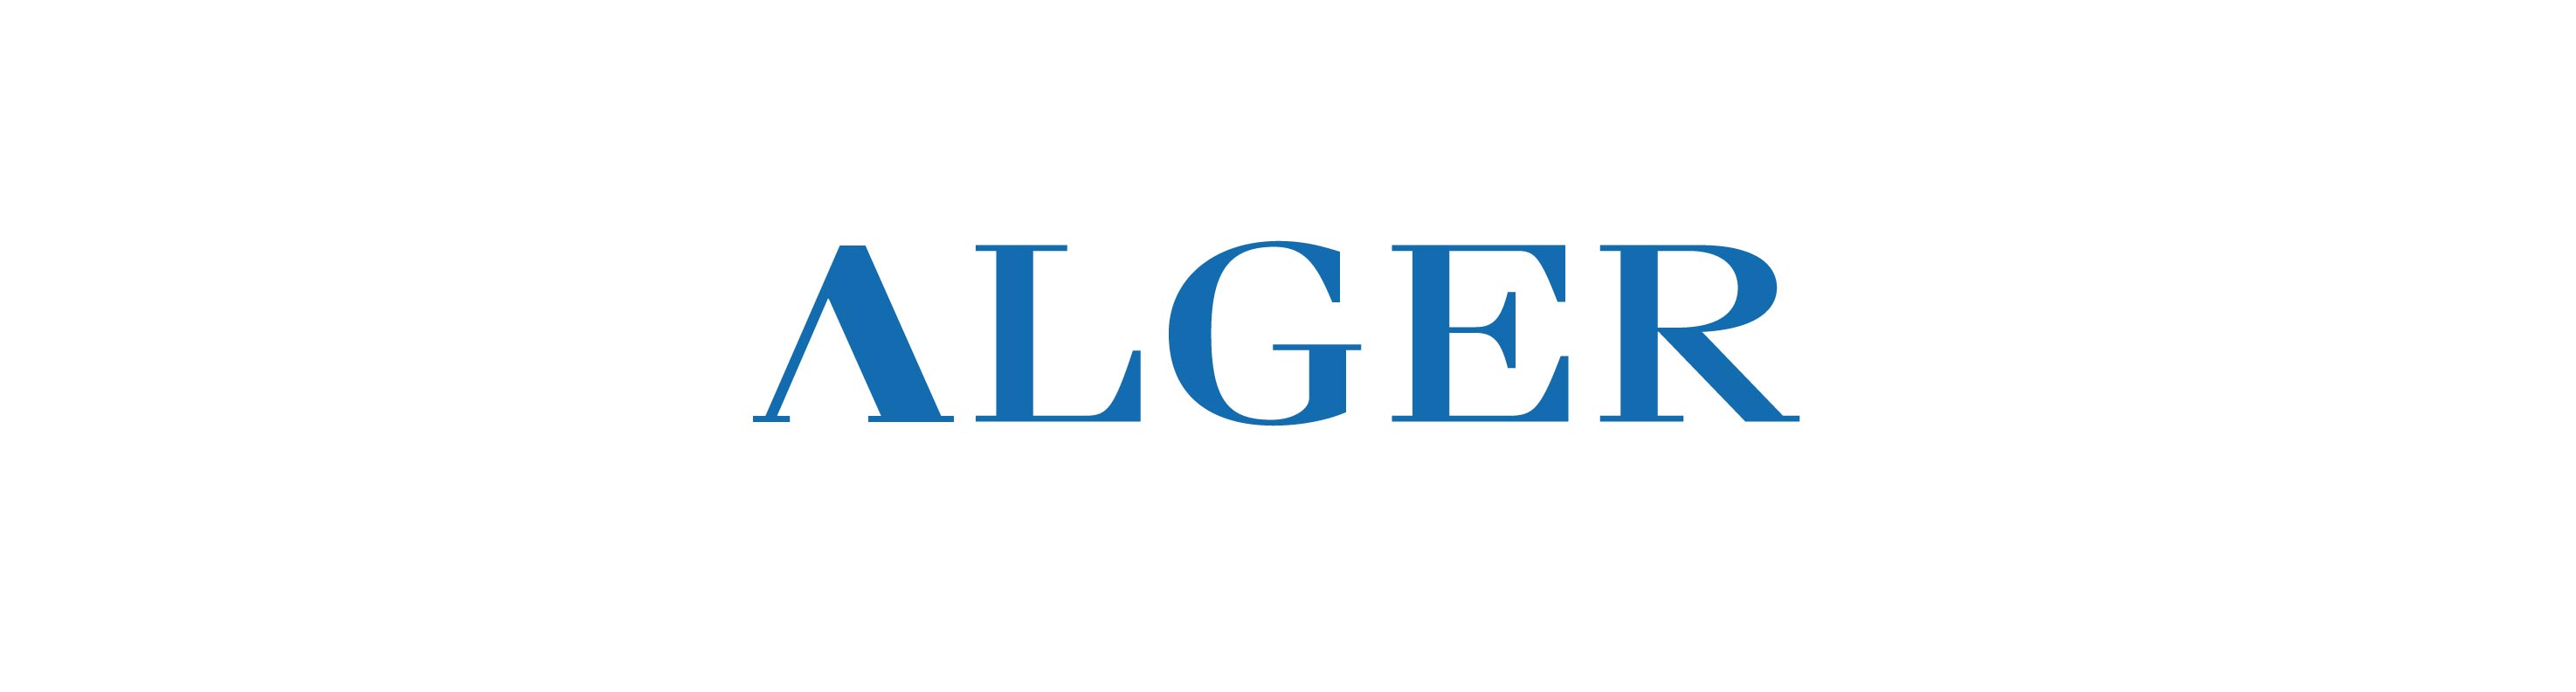 Alger logo in blue